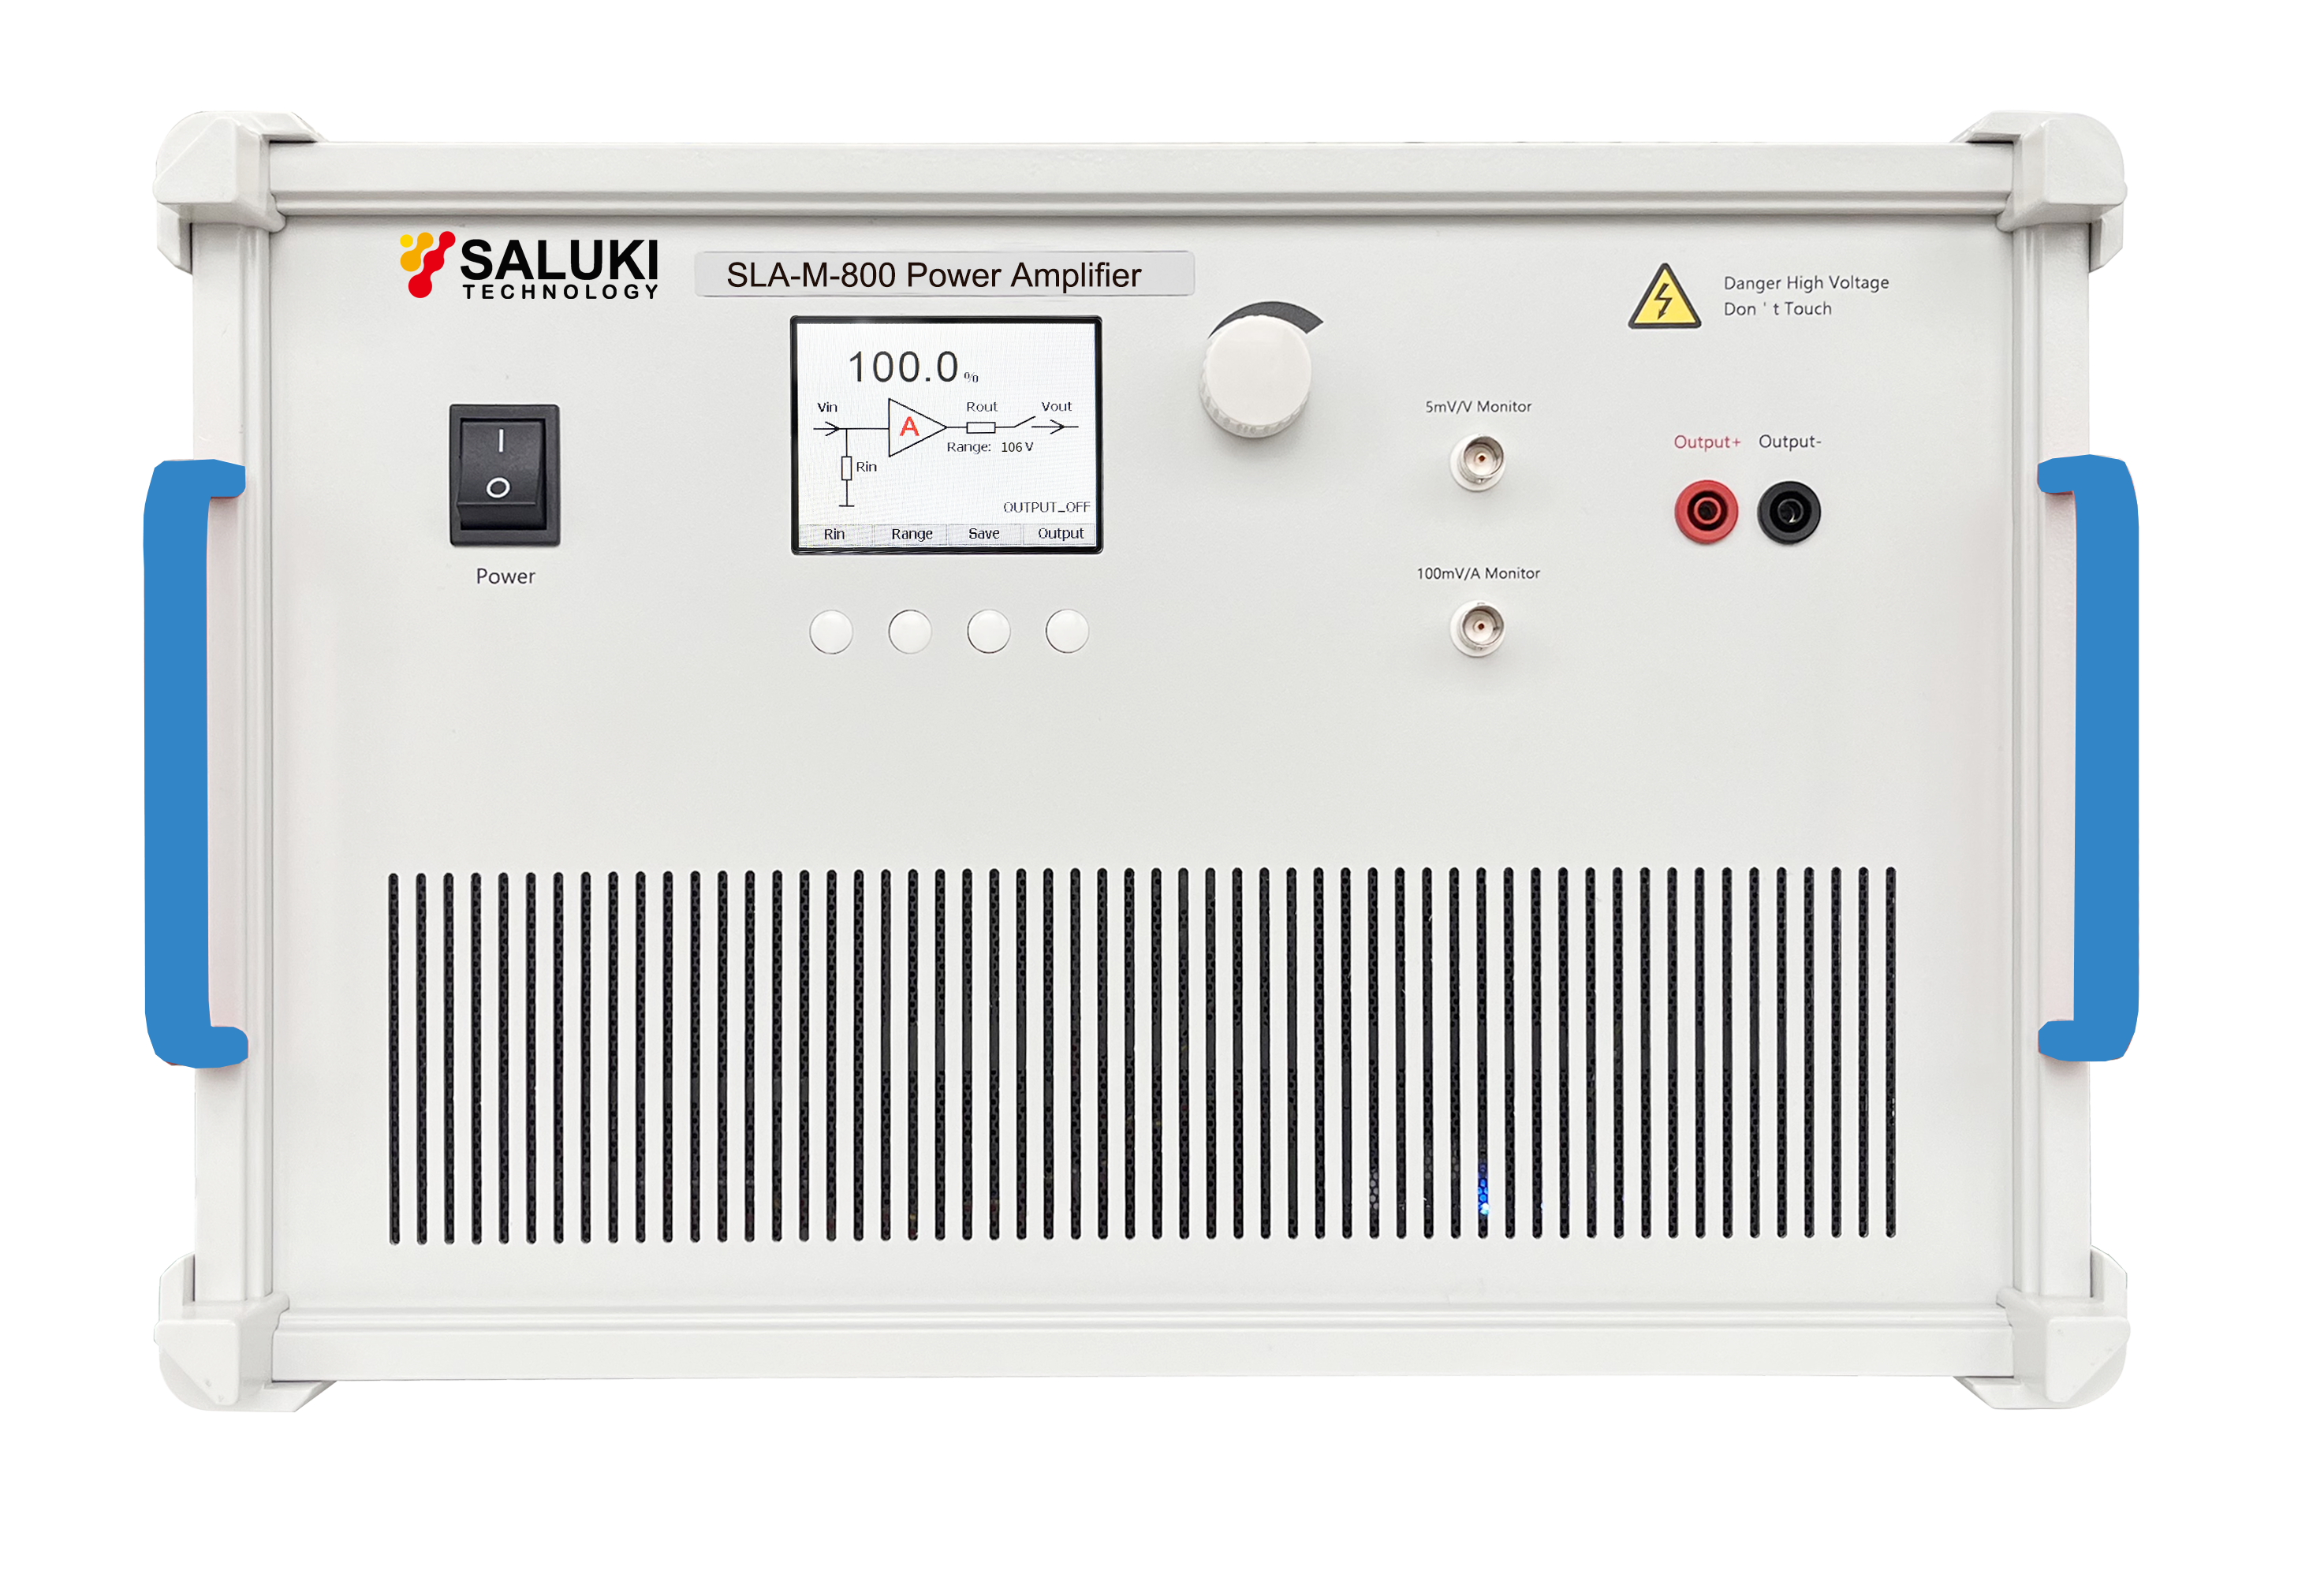 SLA-M-800 Power Amplifier